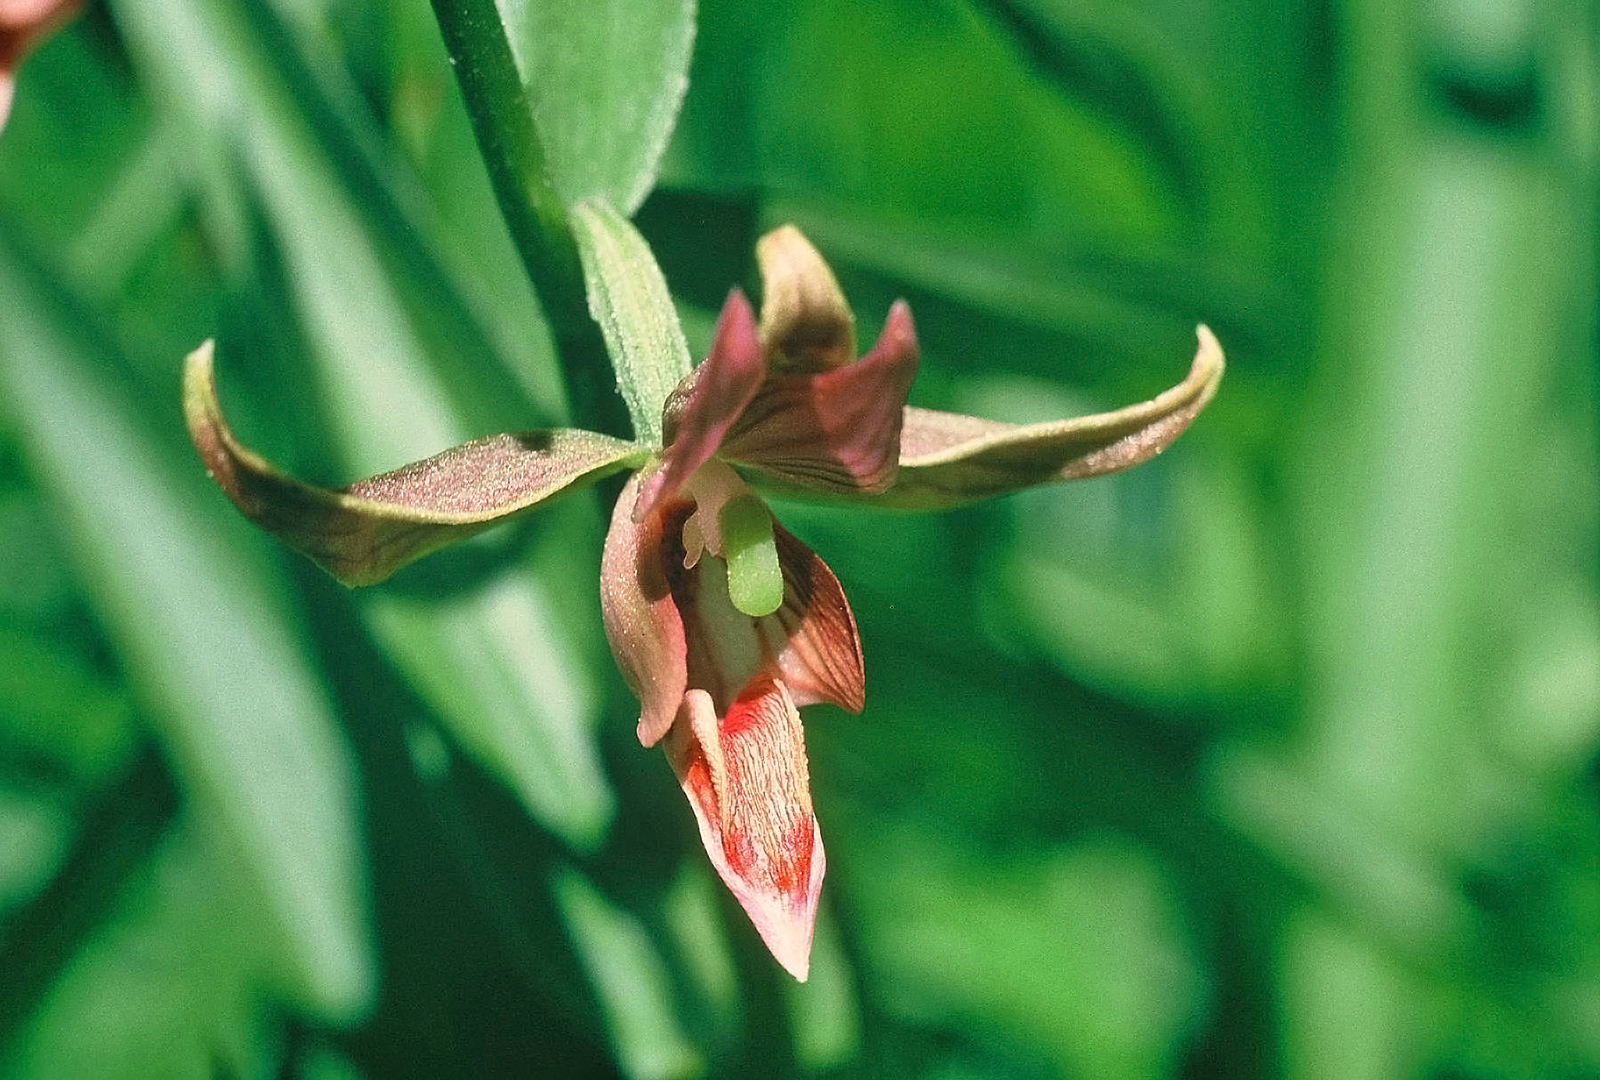 Stream Orchid (Epipactis gigantea)